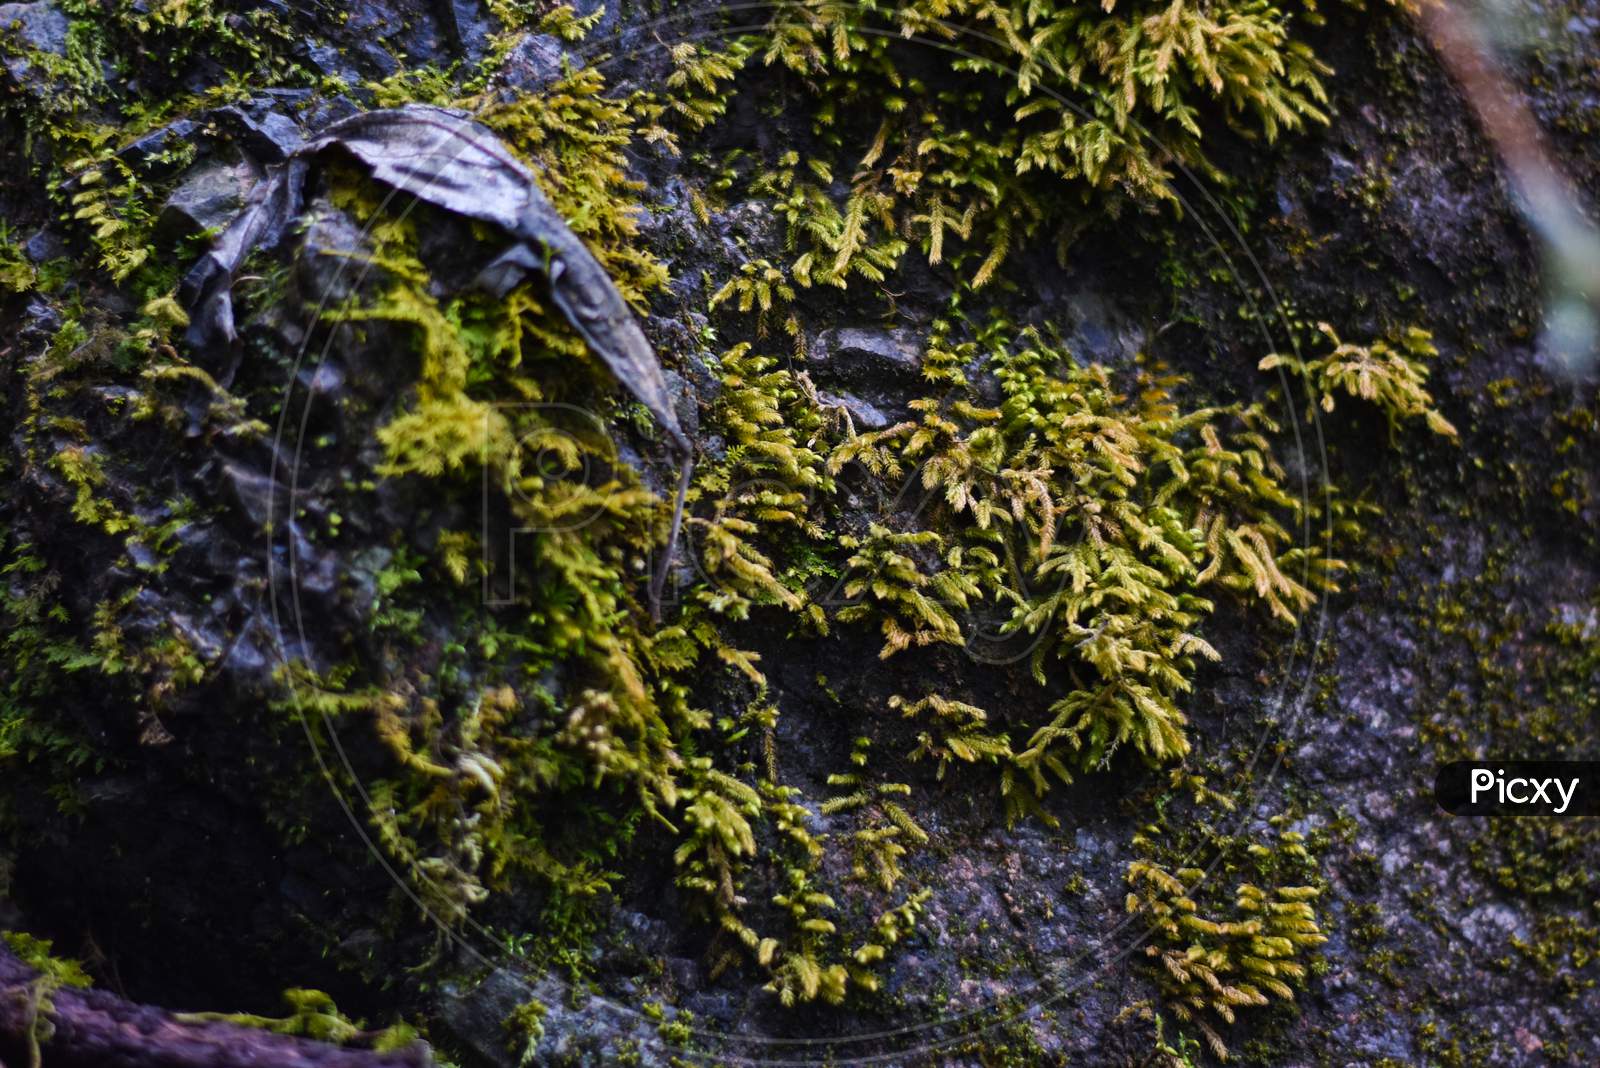 moss on rocks in mountain